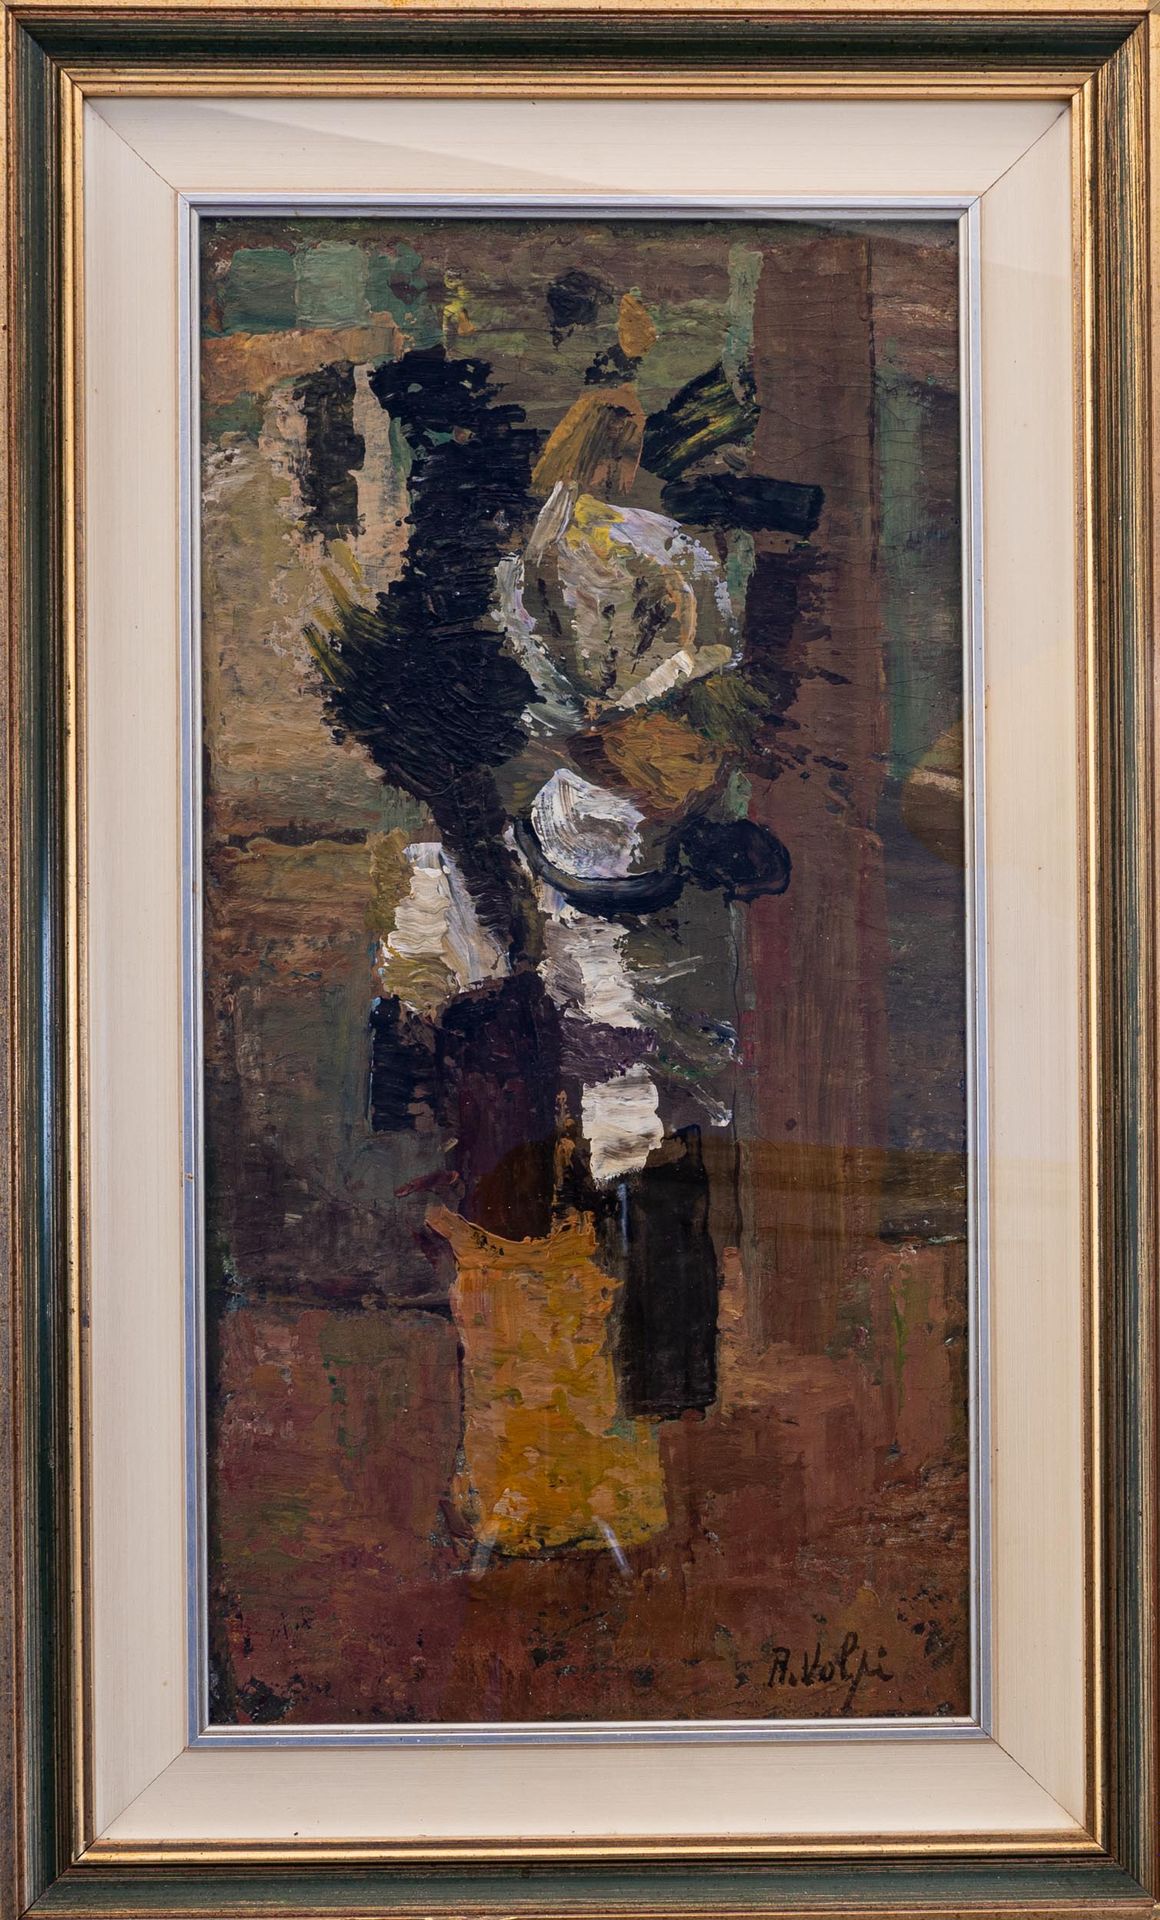 ALESSANDRO VOLPI (Pisa 1909 - Pisa 1978) Natura morta

olio su tavola

cm 63x33